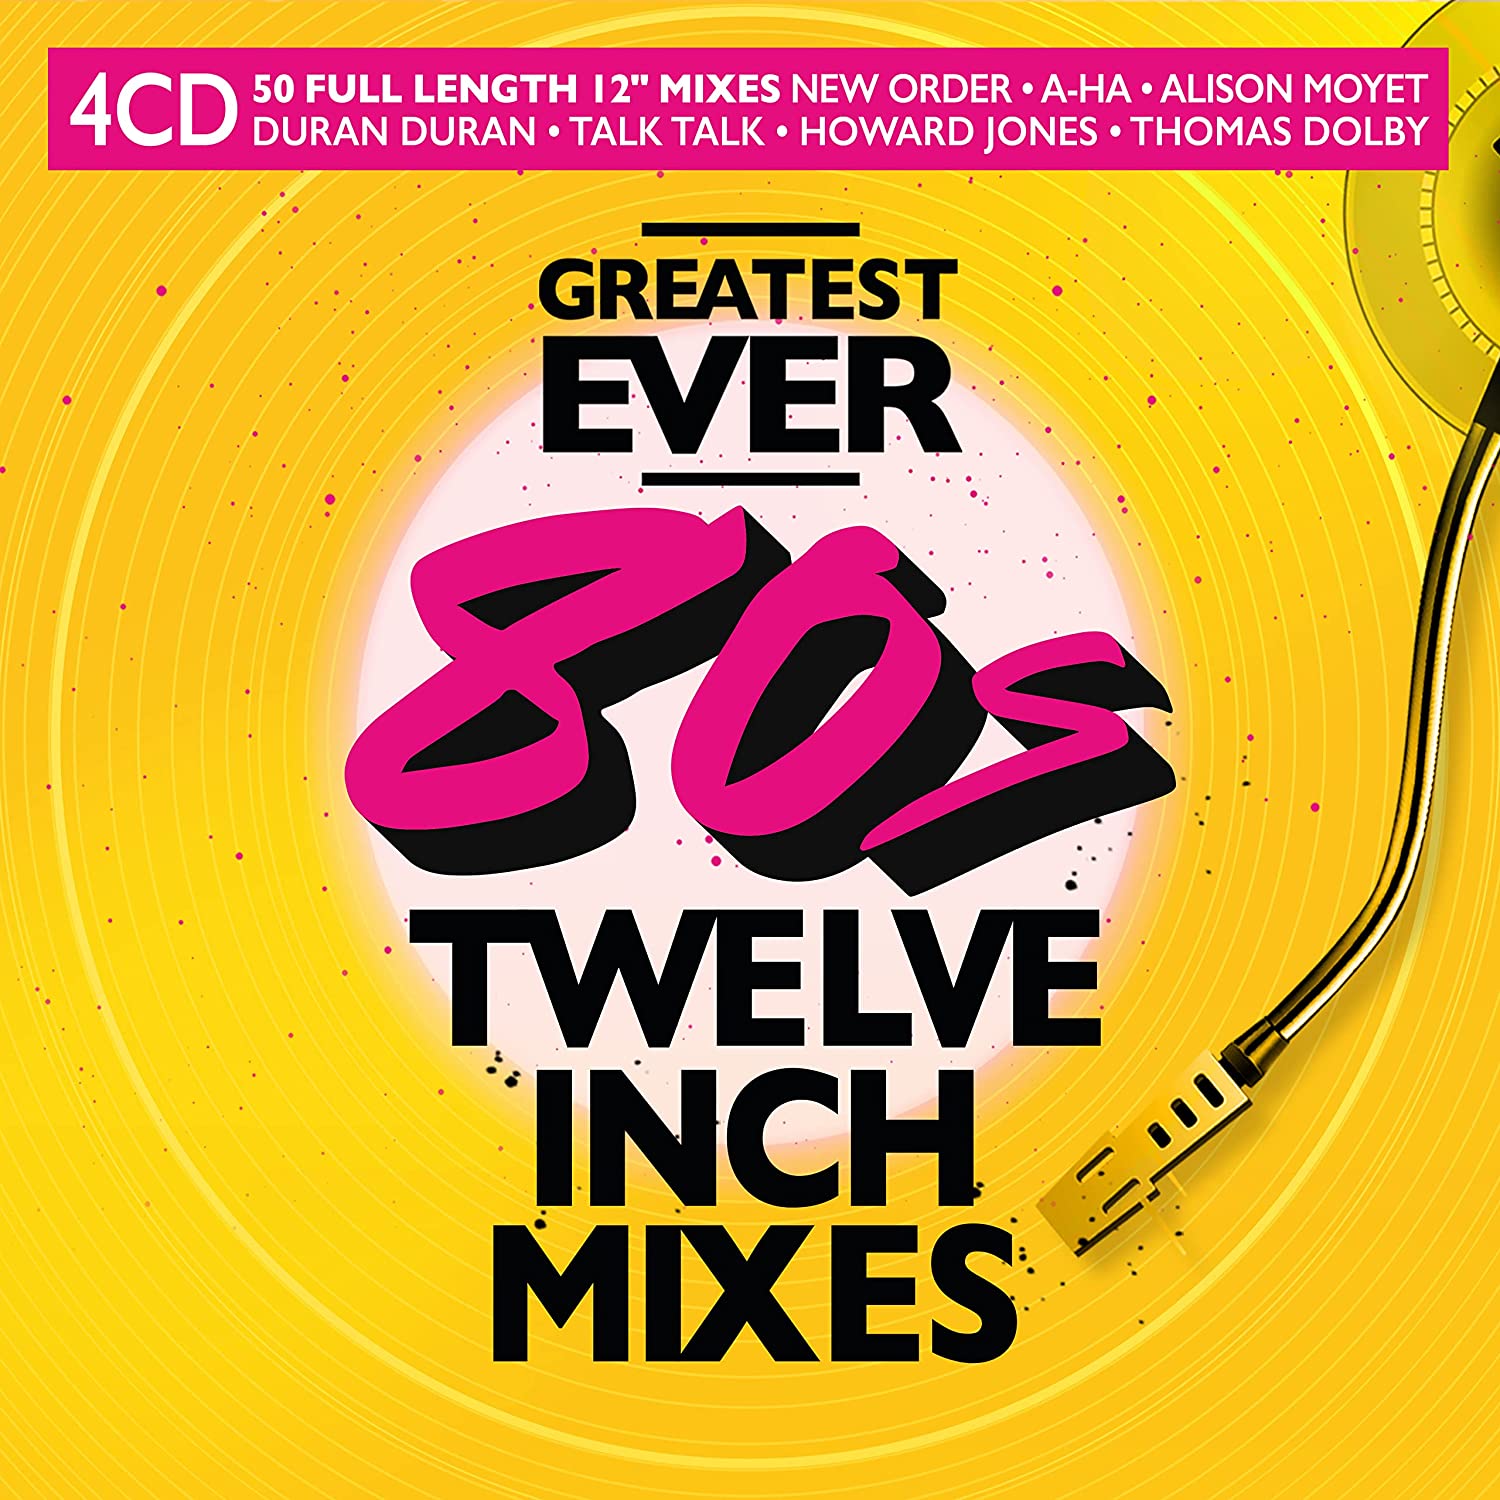 VA - Greatest Ever 80s Twelve Inch Mixes (4CD) (2022)